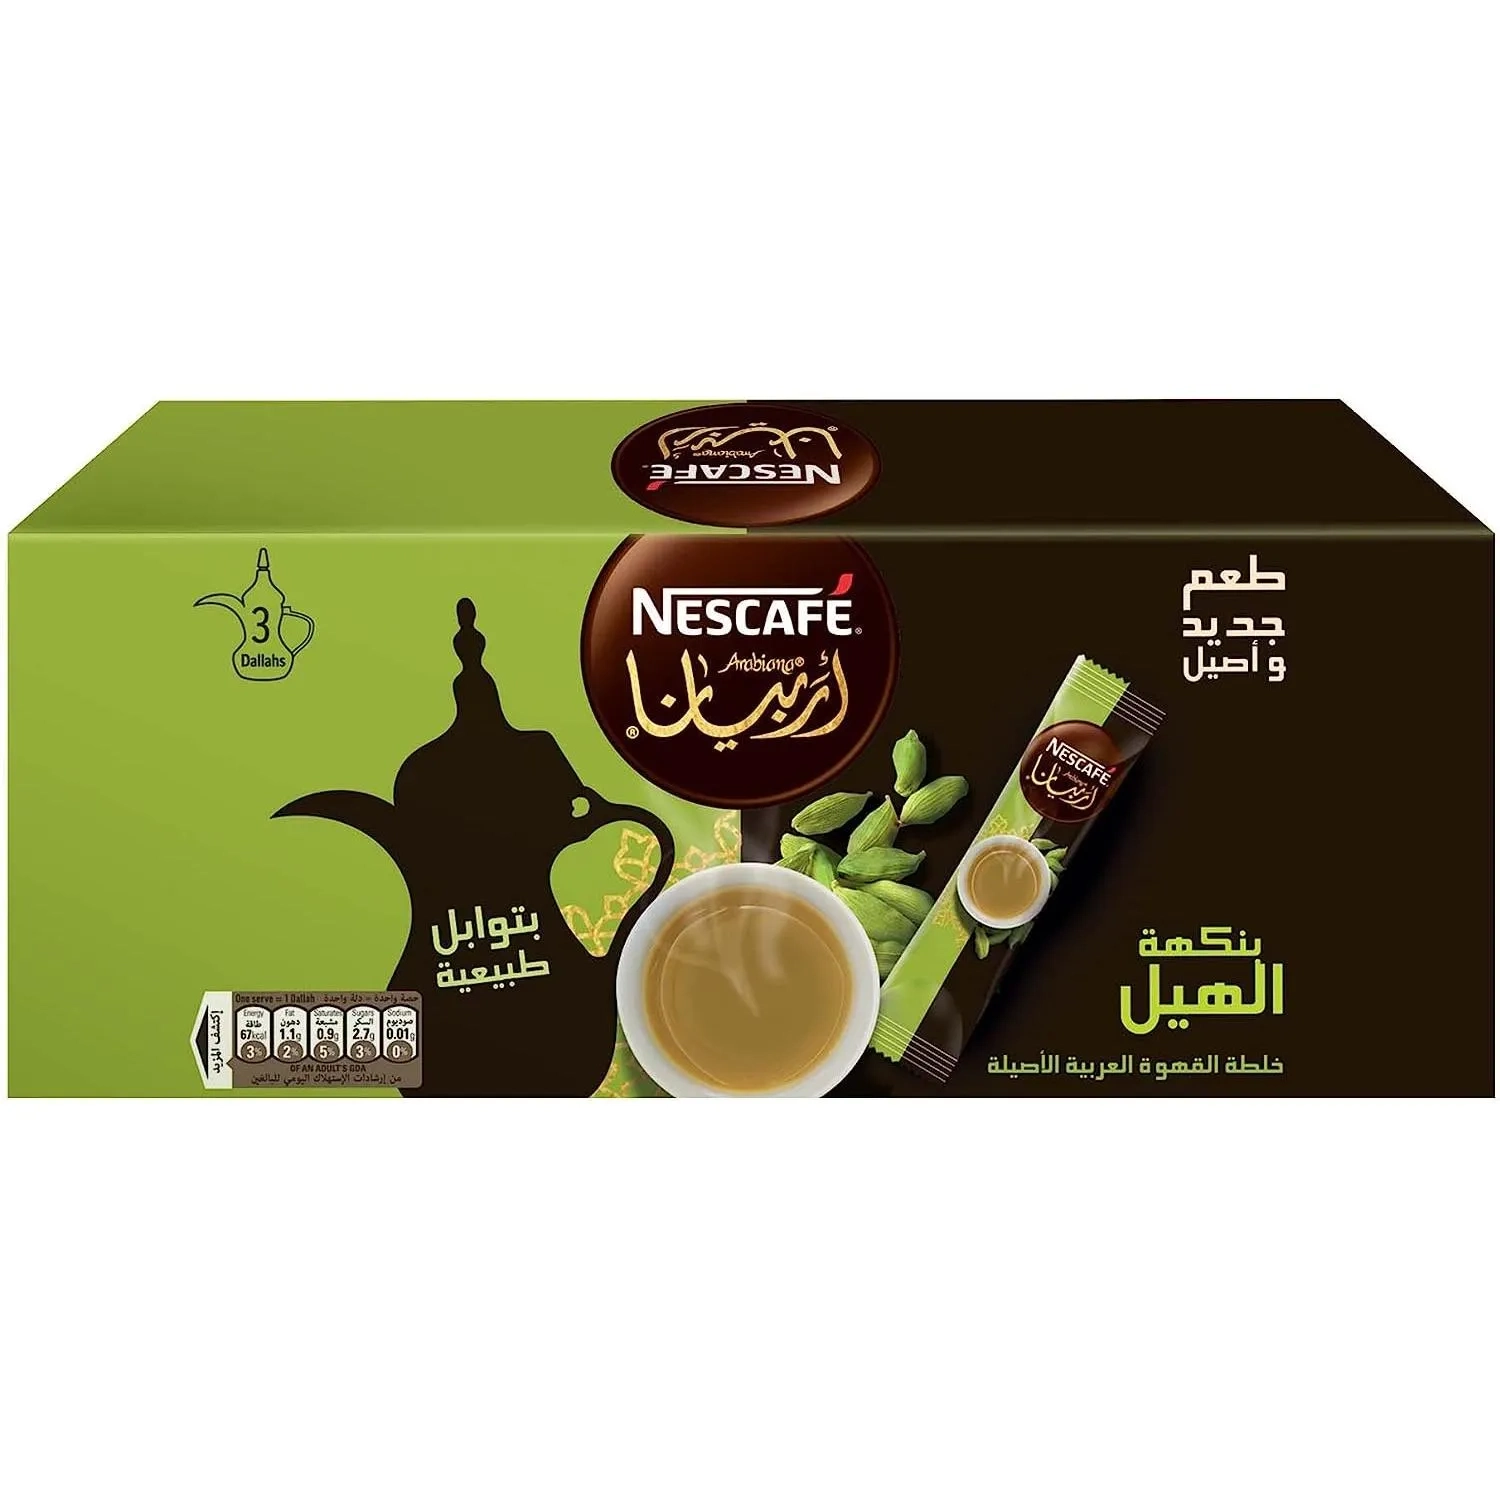 Nescafe Arabiana Instant Arabic Coffee With Cardamom Sachet 17g (3 Sachets) - B07MVKXNWX (JBI00E2D8)